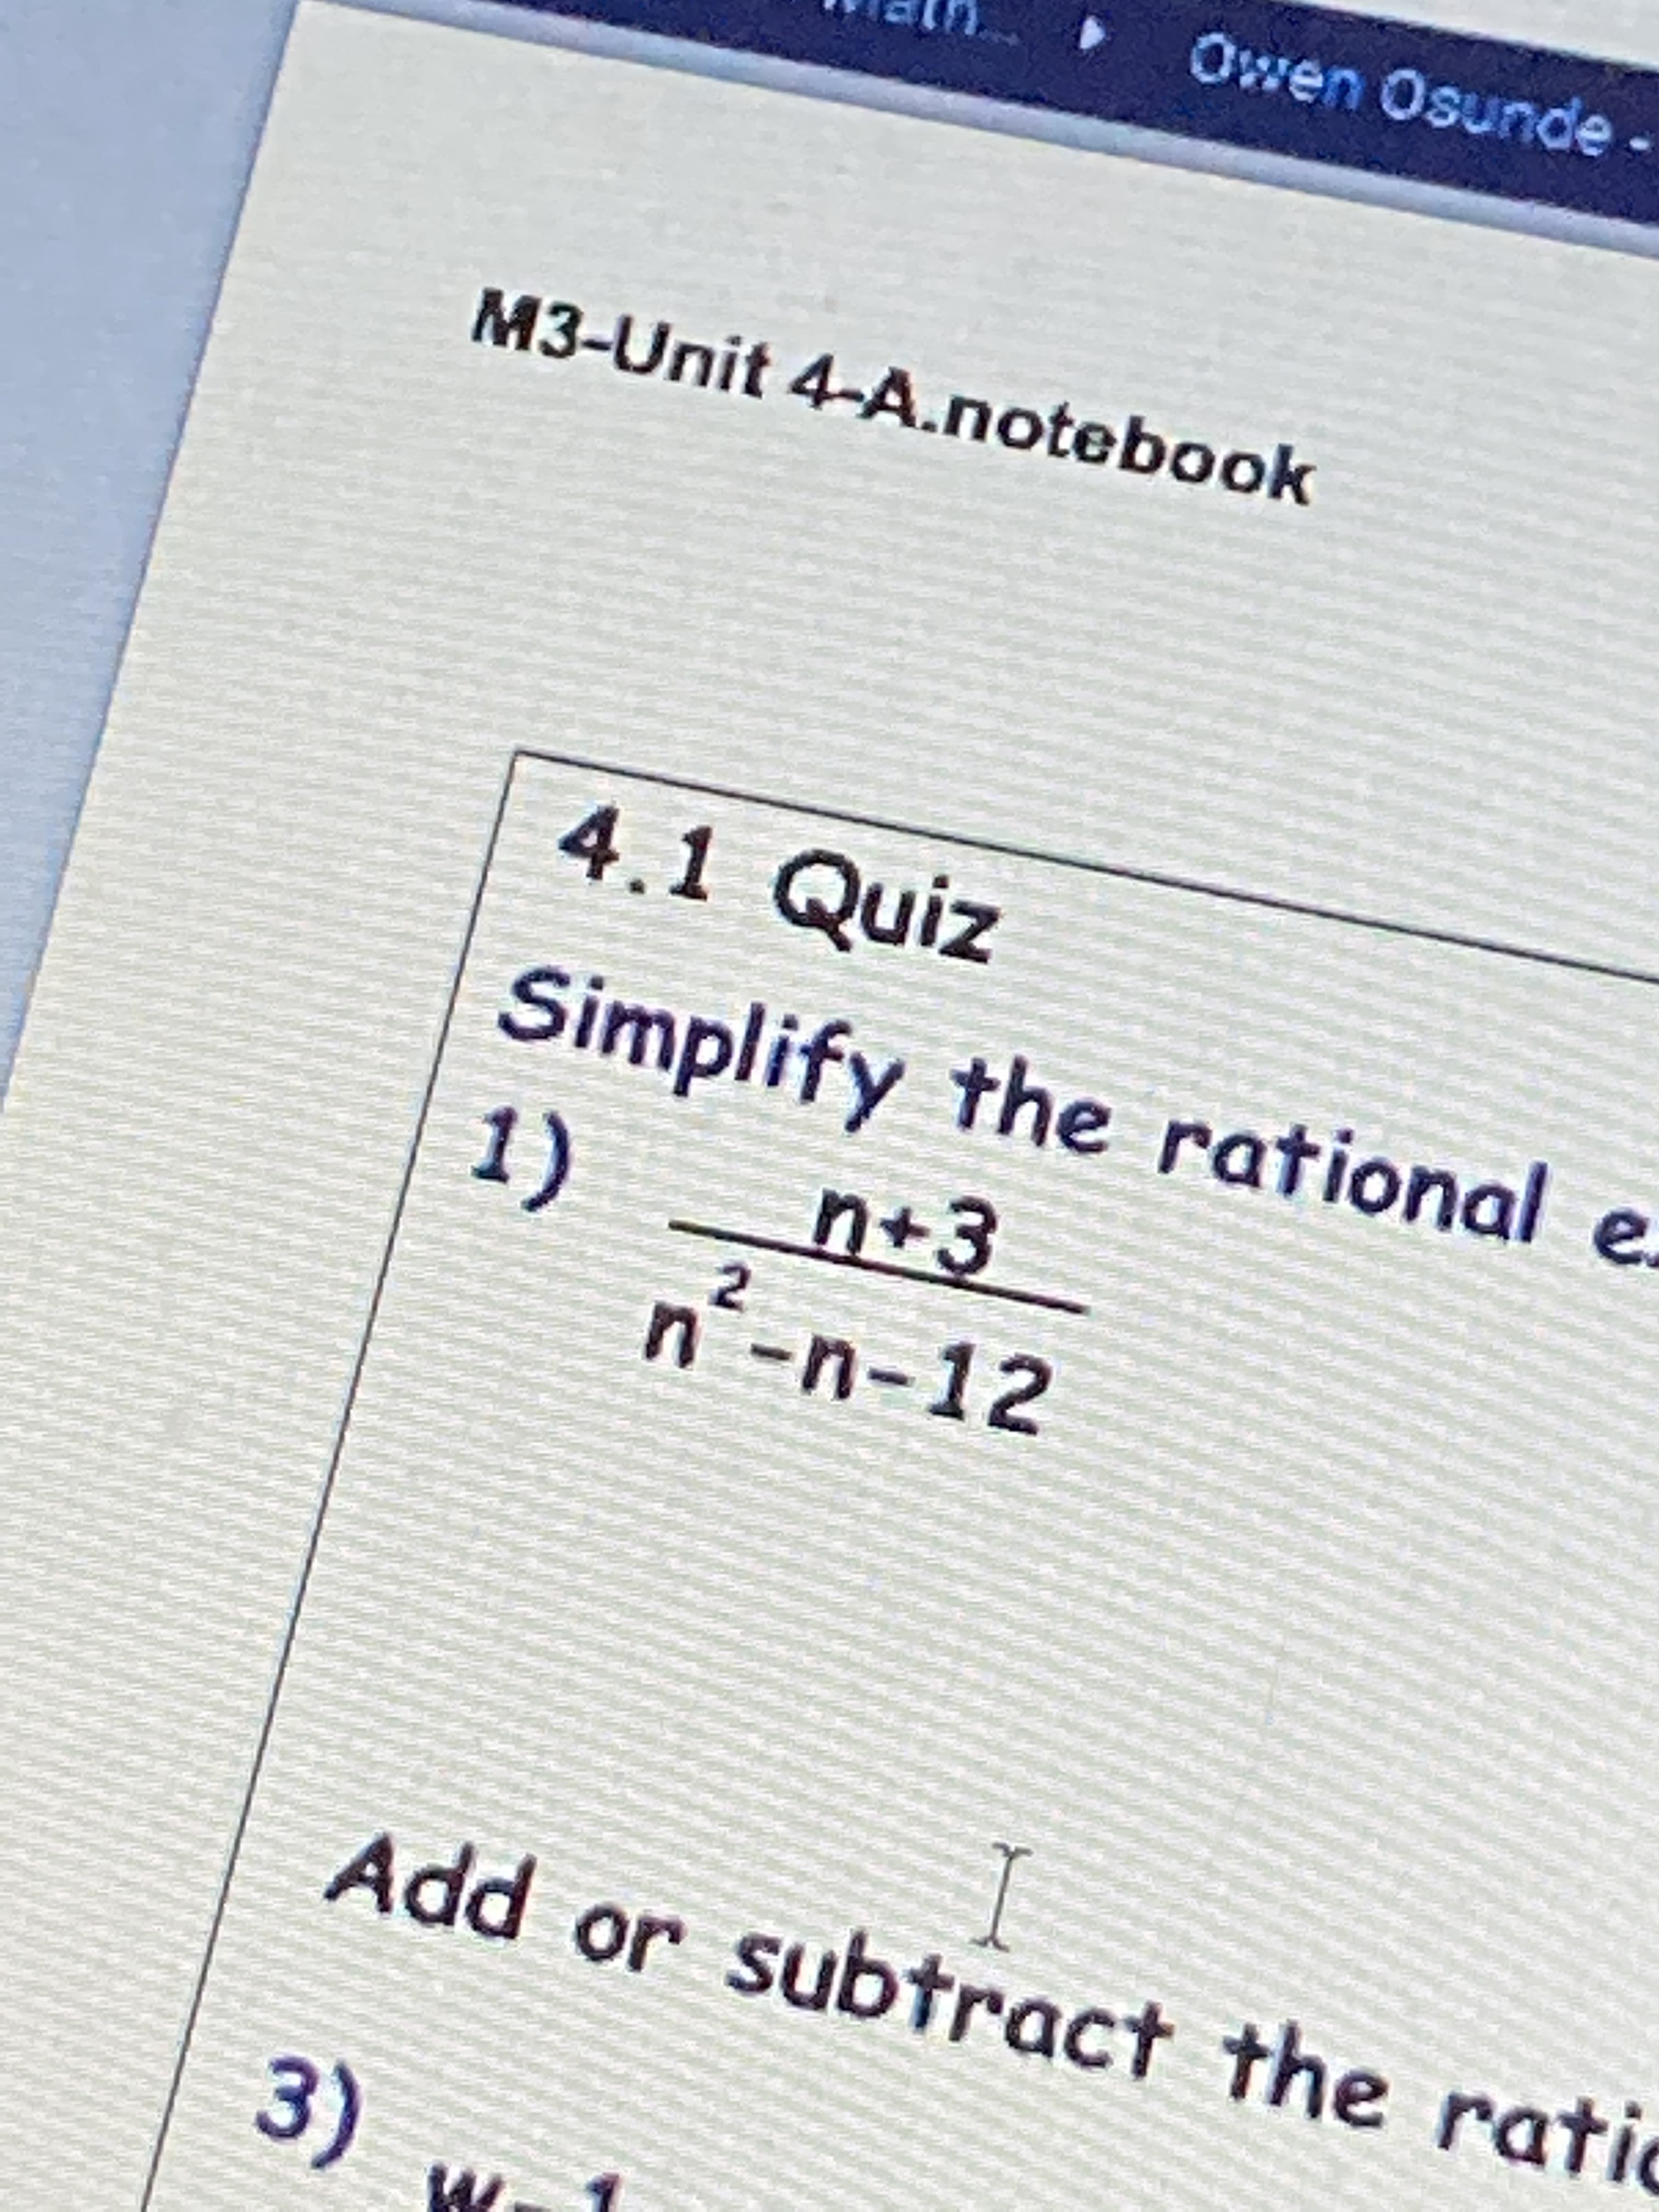 Simplify the rational
1)
n´-n-12
n+3
